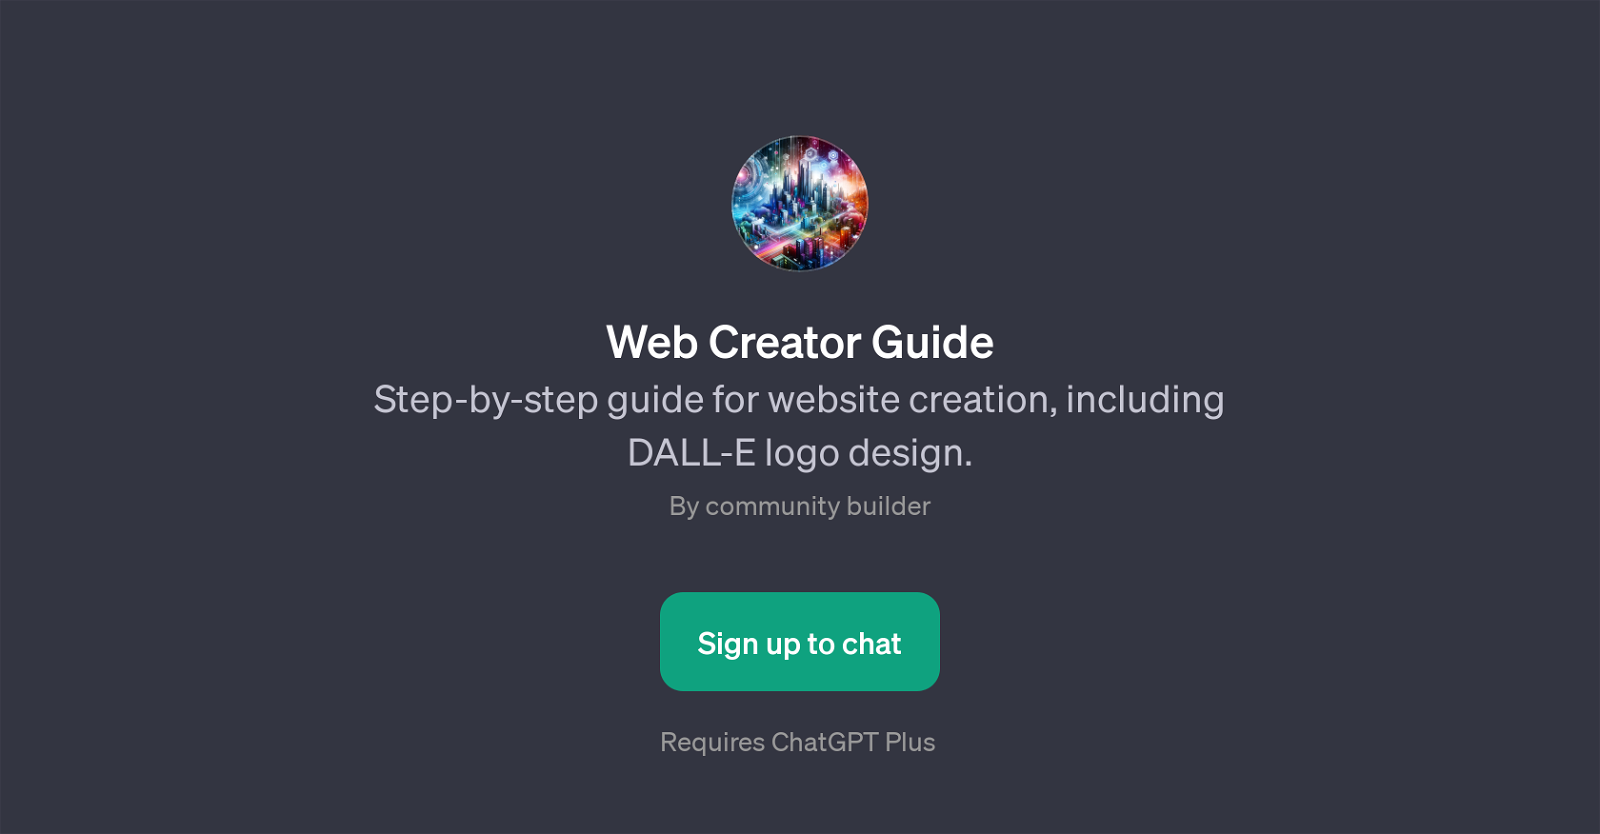 Web Creator Guide website